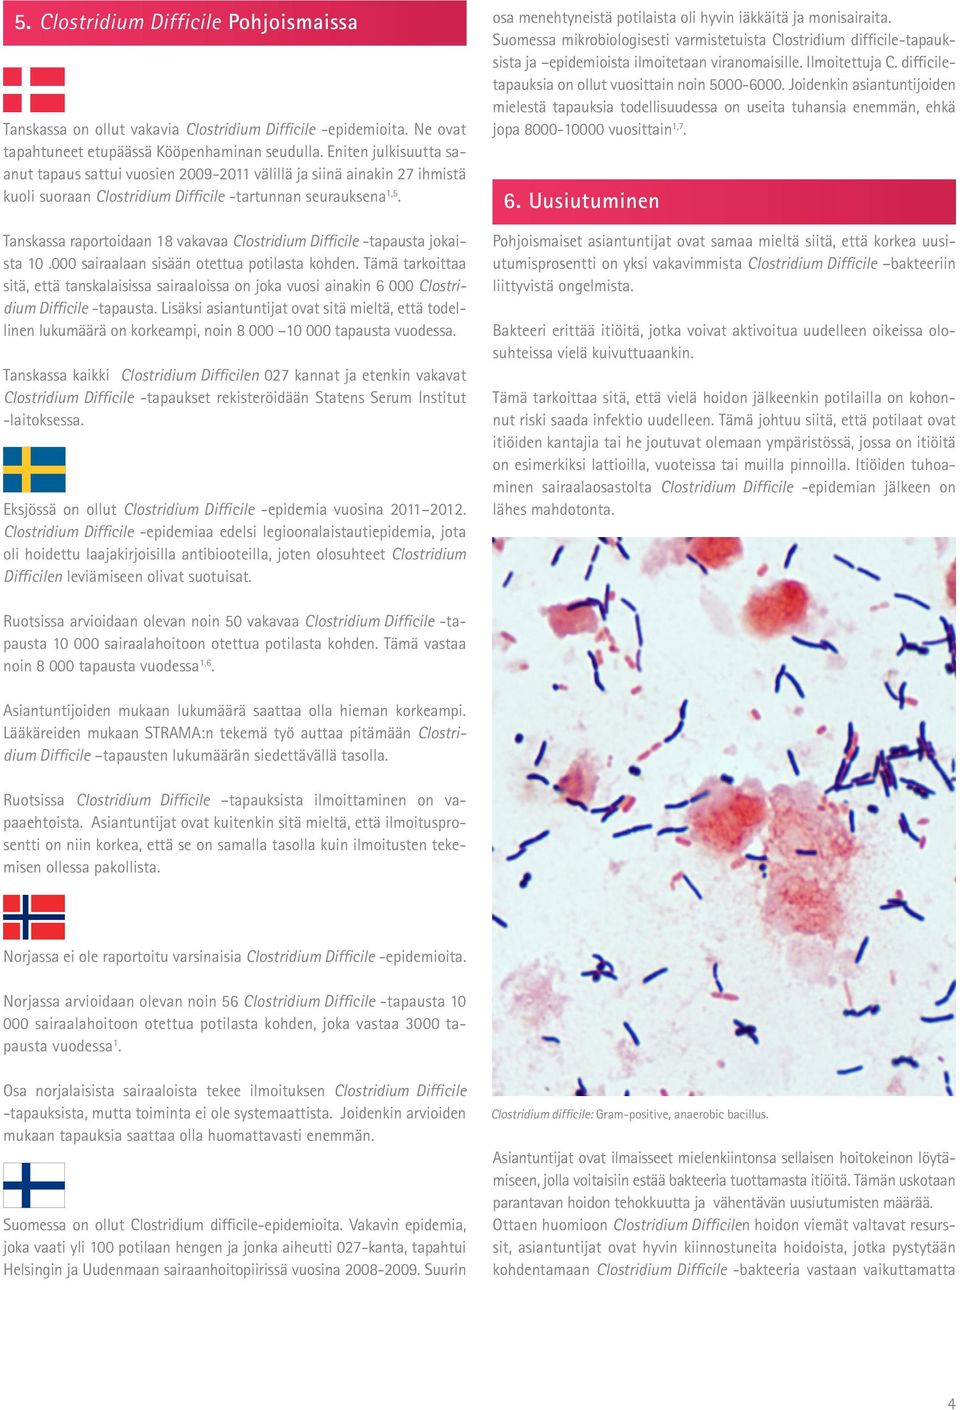 Tanskassa raportoidaan 18 vakavaa Clostridium Difficile -tapausta jokaista 10.000 sairaalaan sisään otettua potilasta kohden.